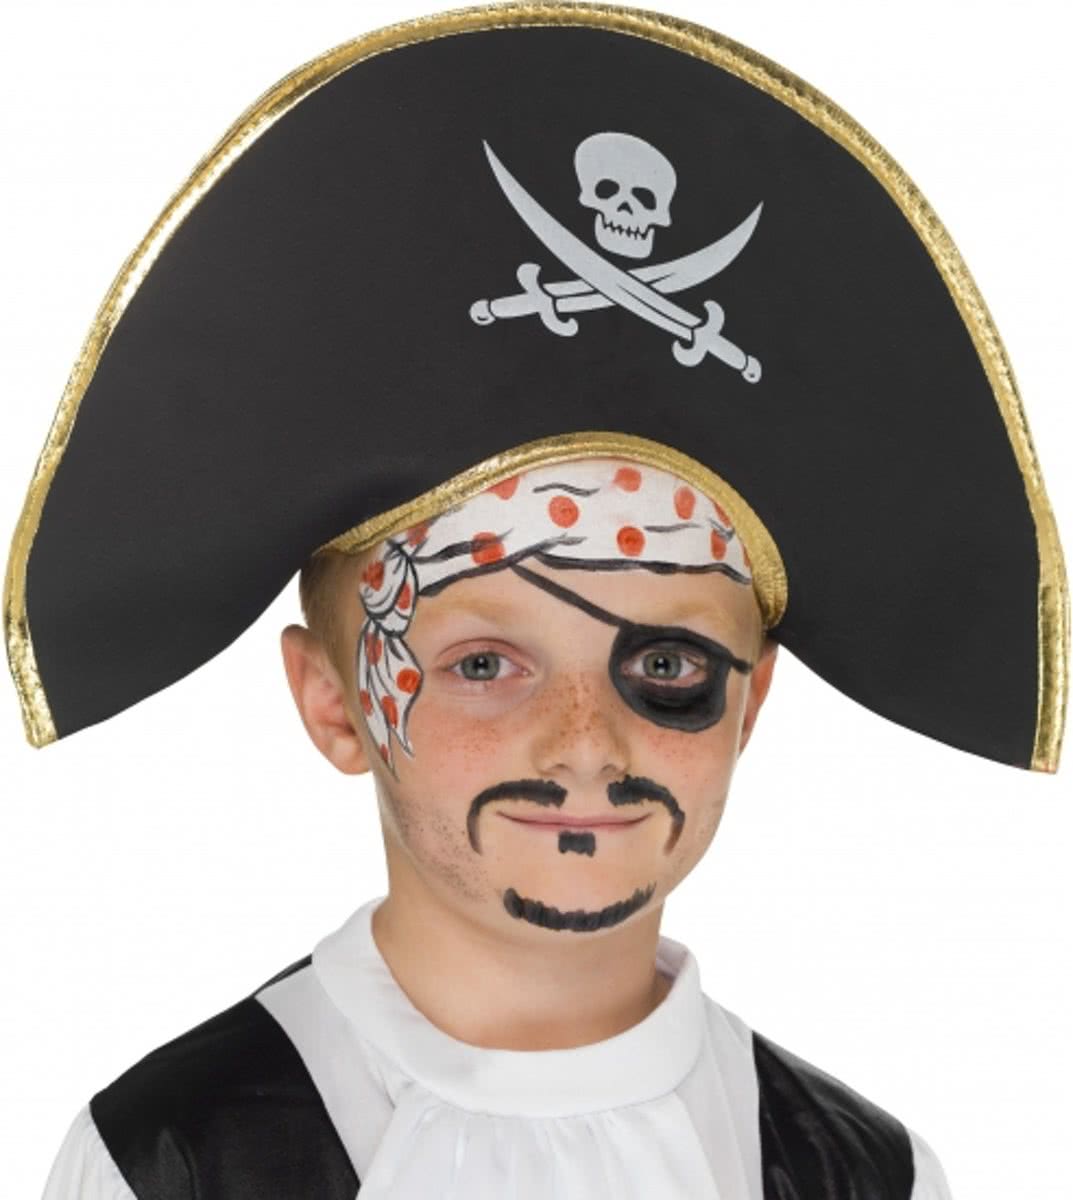 Kinderhoed piraat